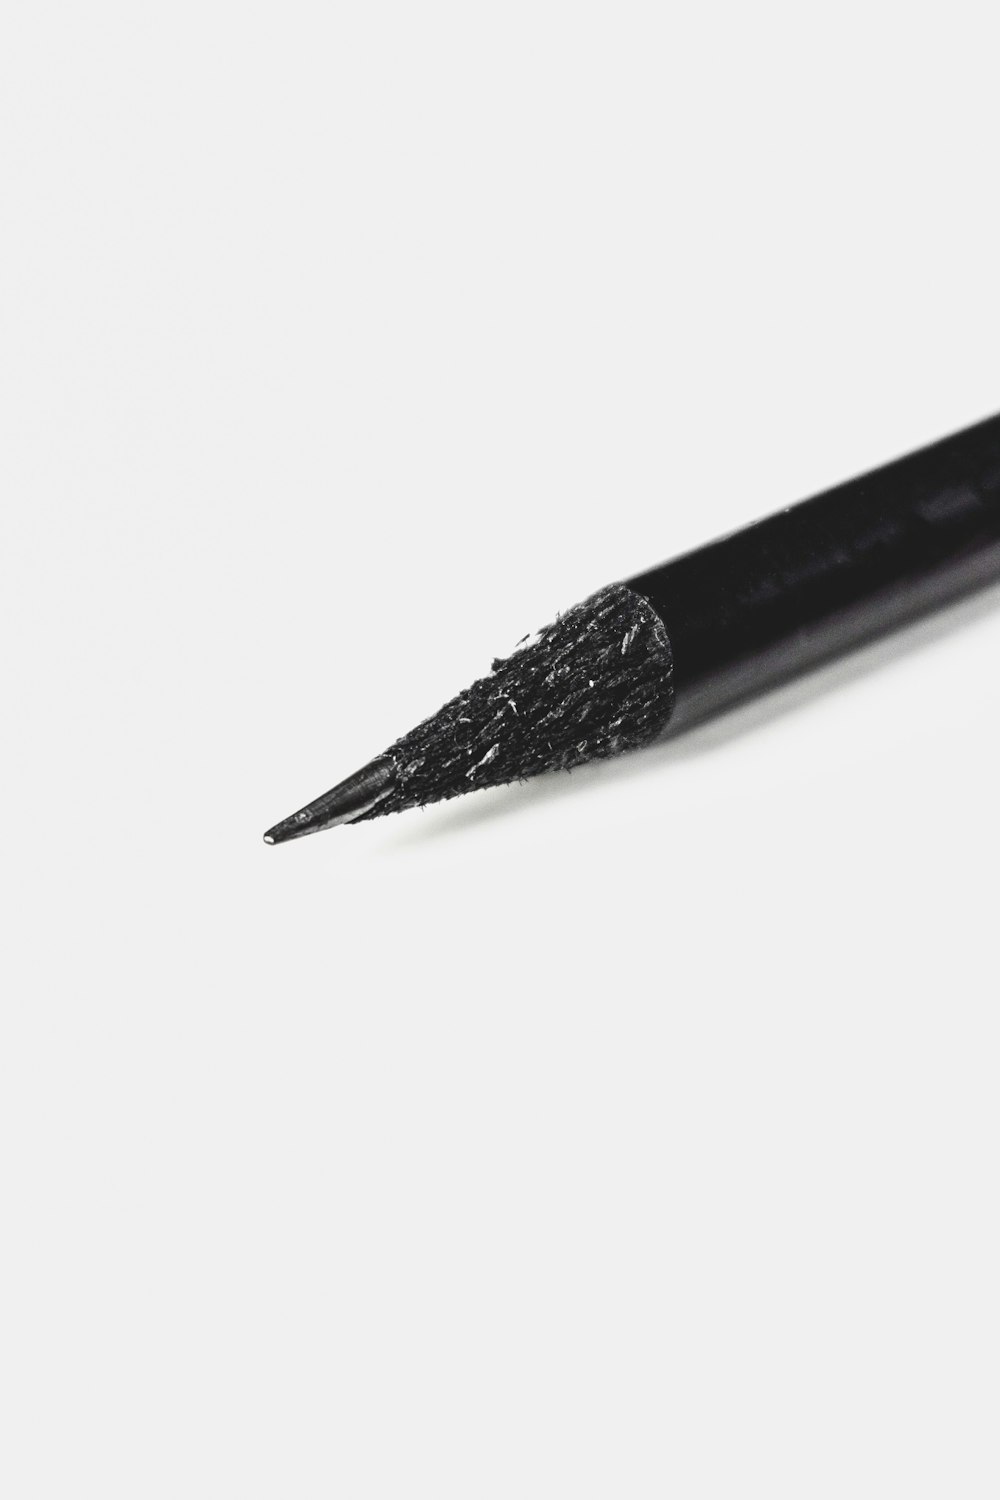 lápis preto na superfície branca